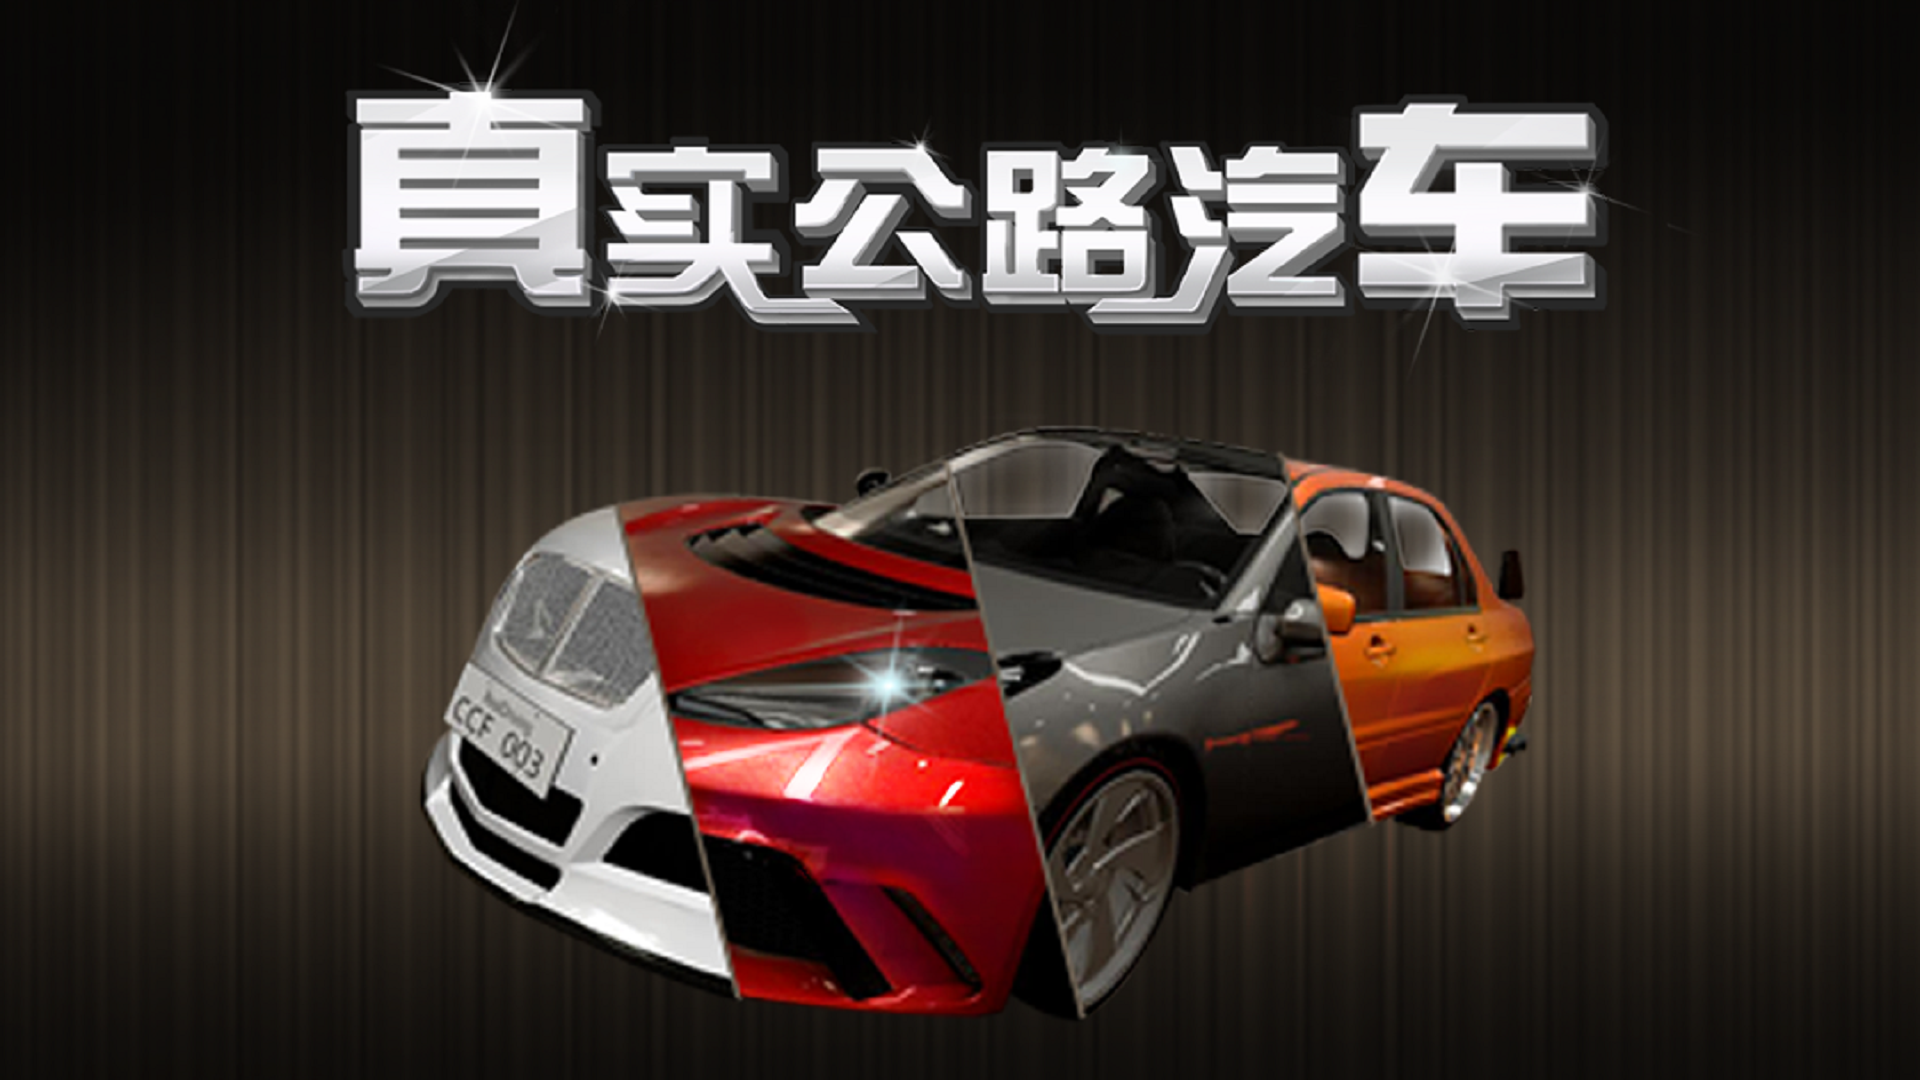 Banner of 本物のロードカー 2.2.3.404.401.0120